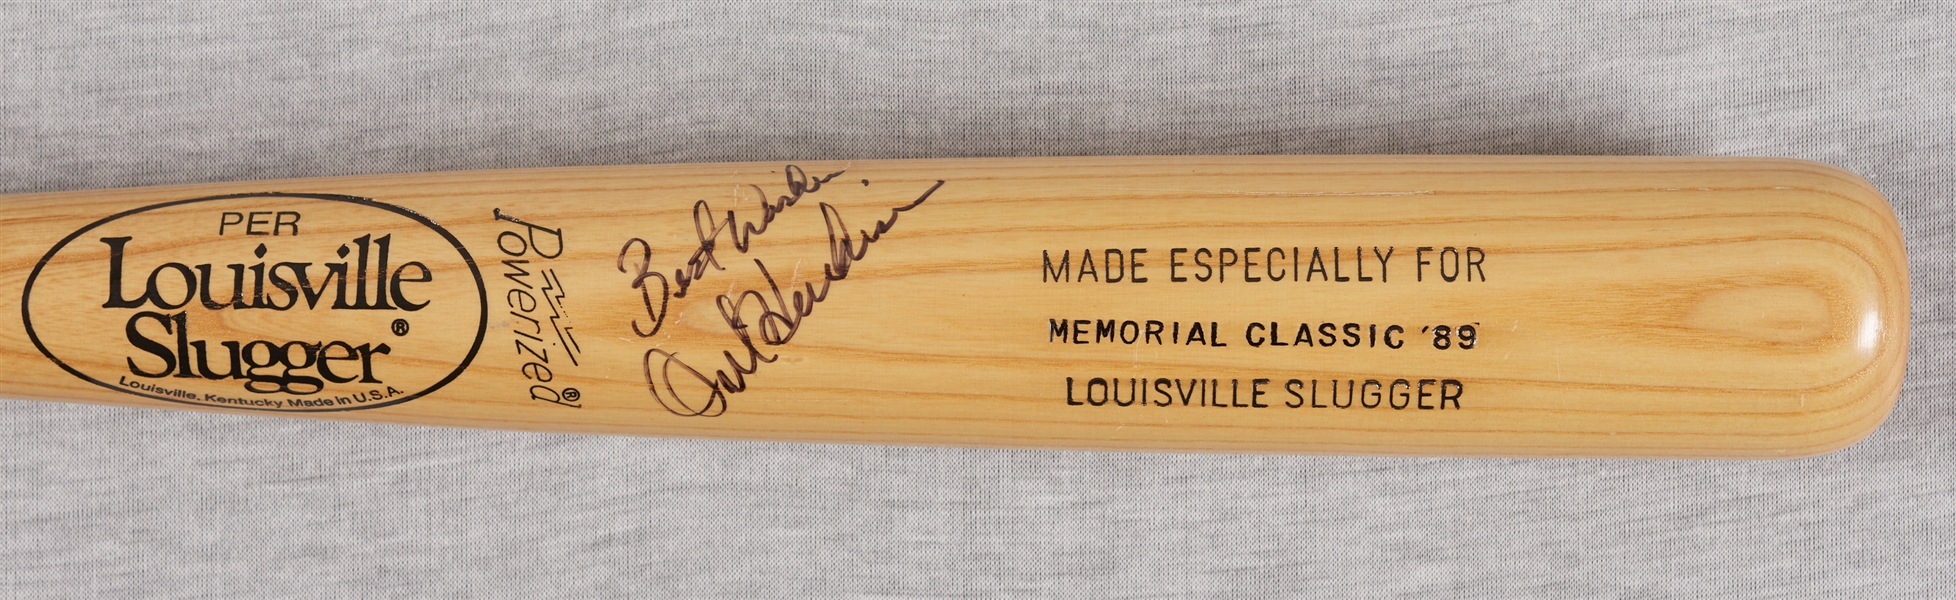 Orel Hershiser Signed 1989 Memorial Classic Bat (BAS)